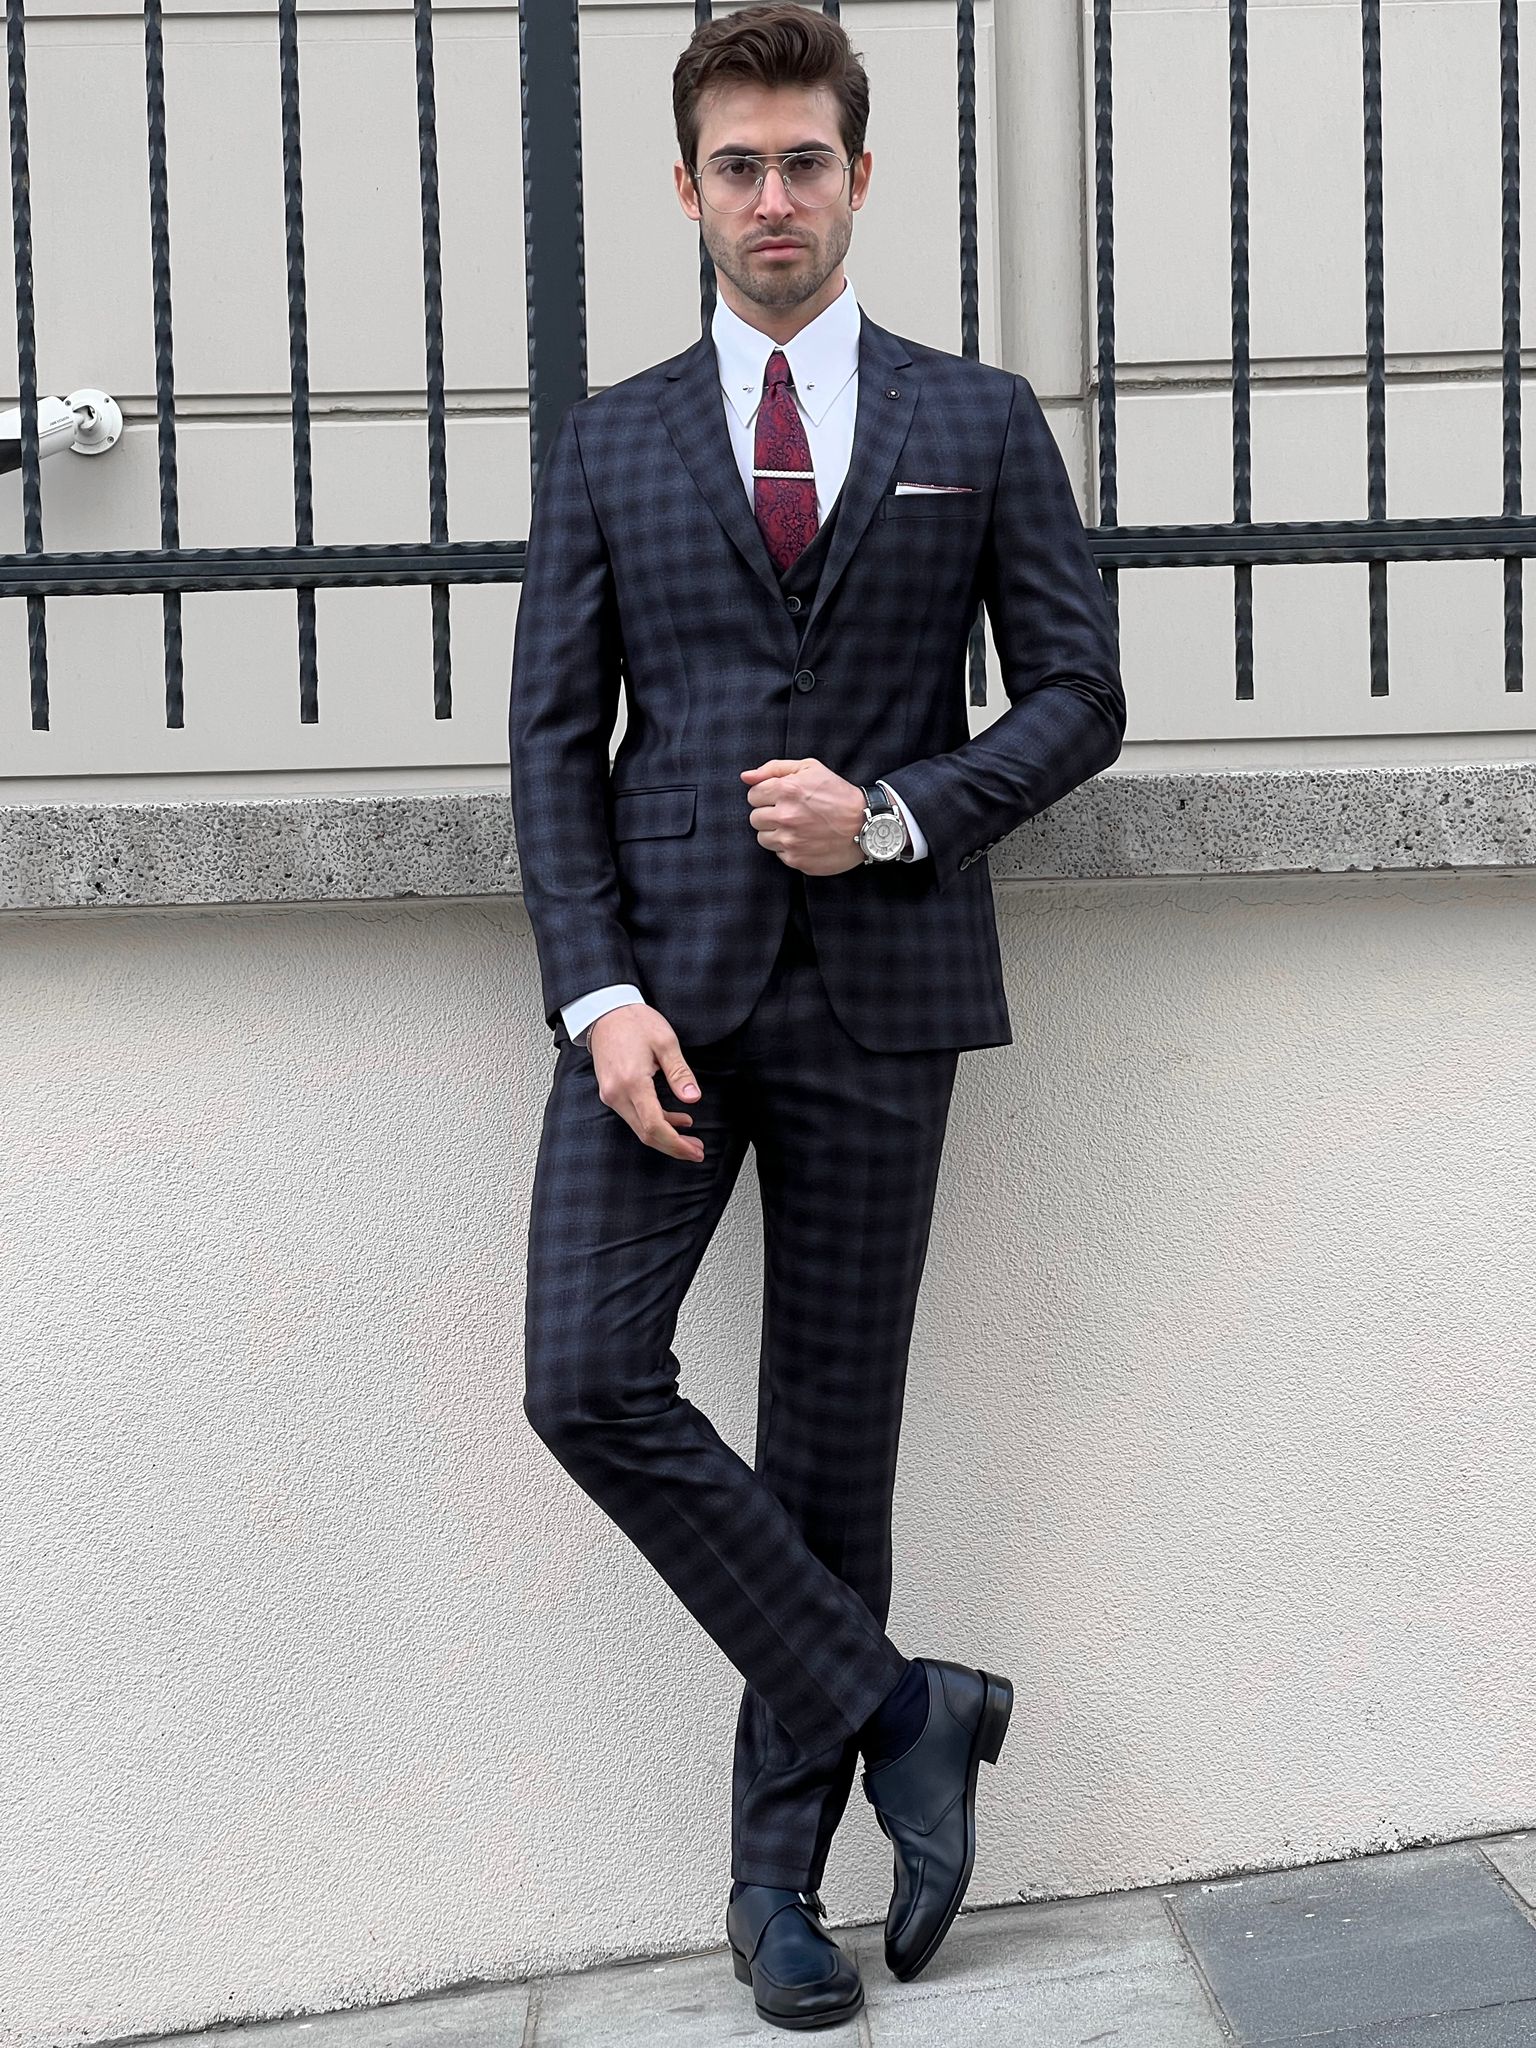 Louis Slim Fit Black & Navy Business Plaid Suit